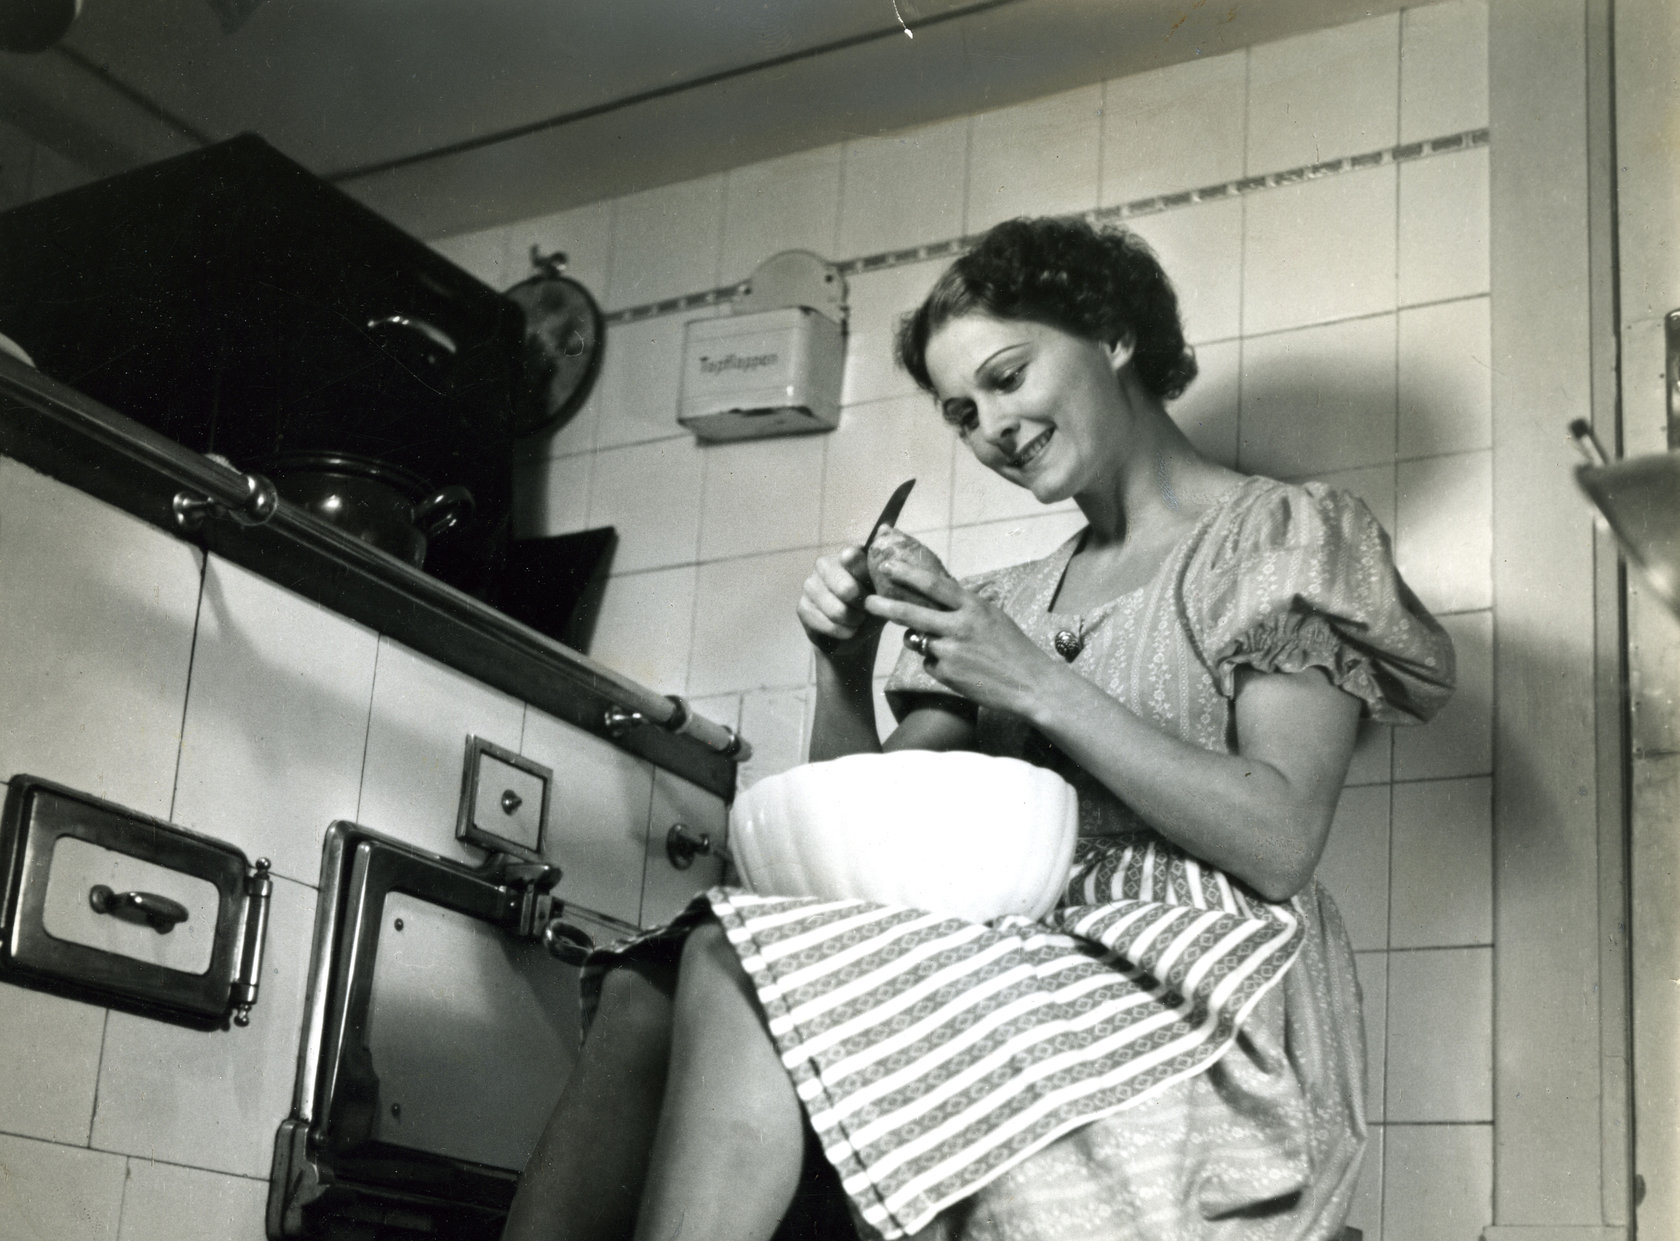 Teaser Motiv klassische Hausfrauendarstellung in schwarz weiß aus den 50er Jahren